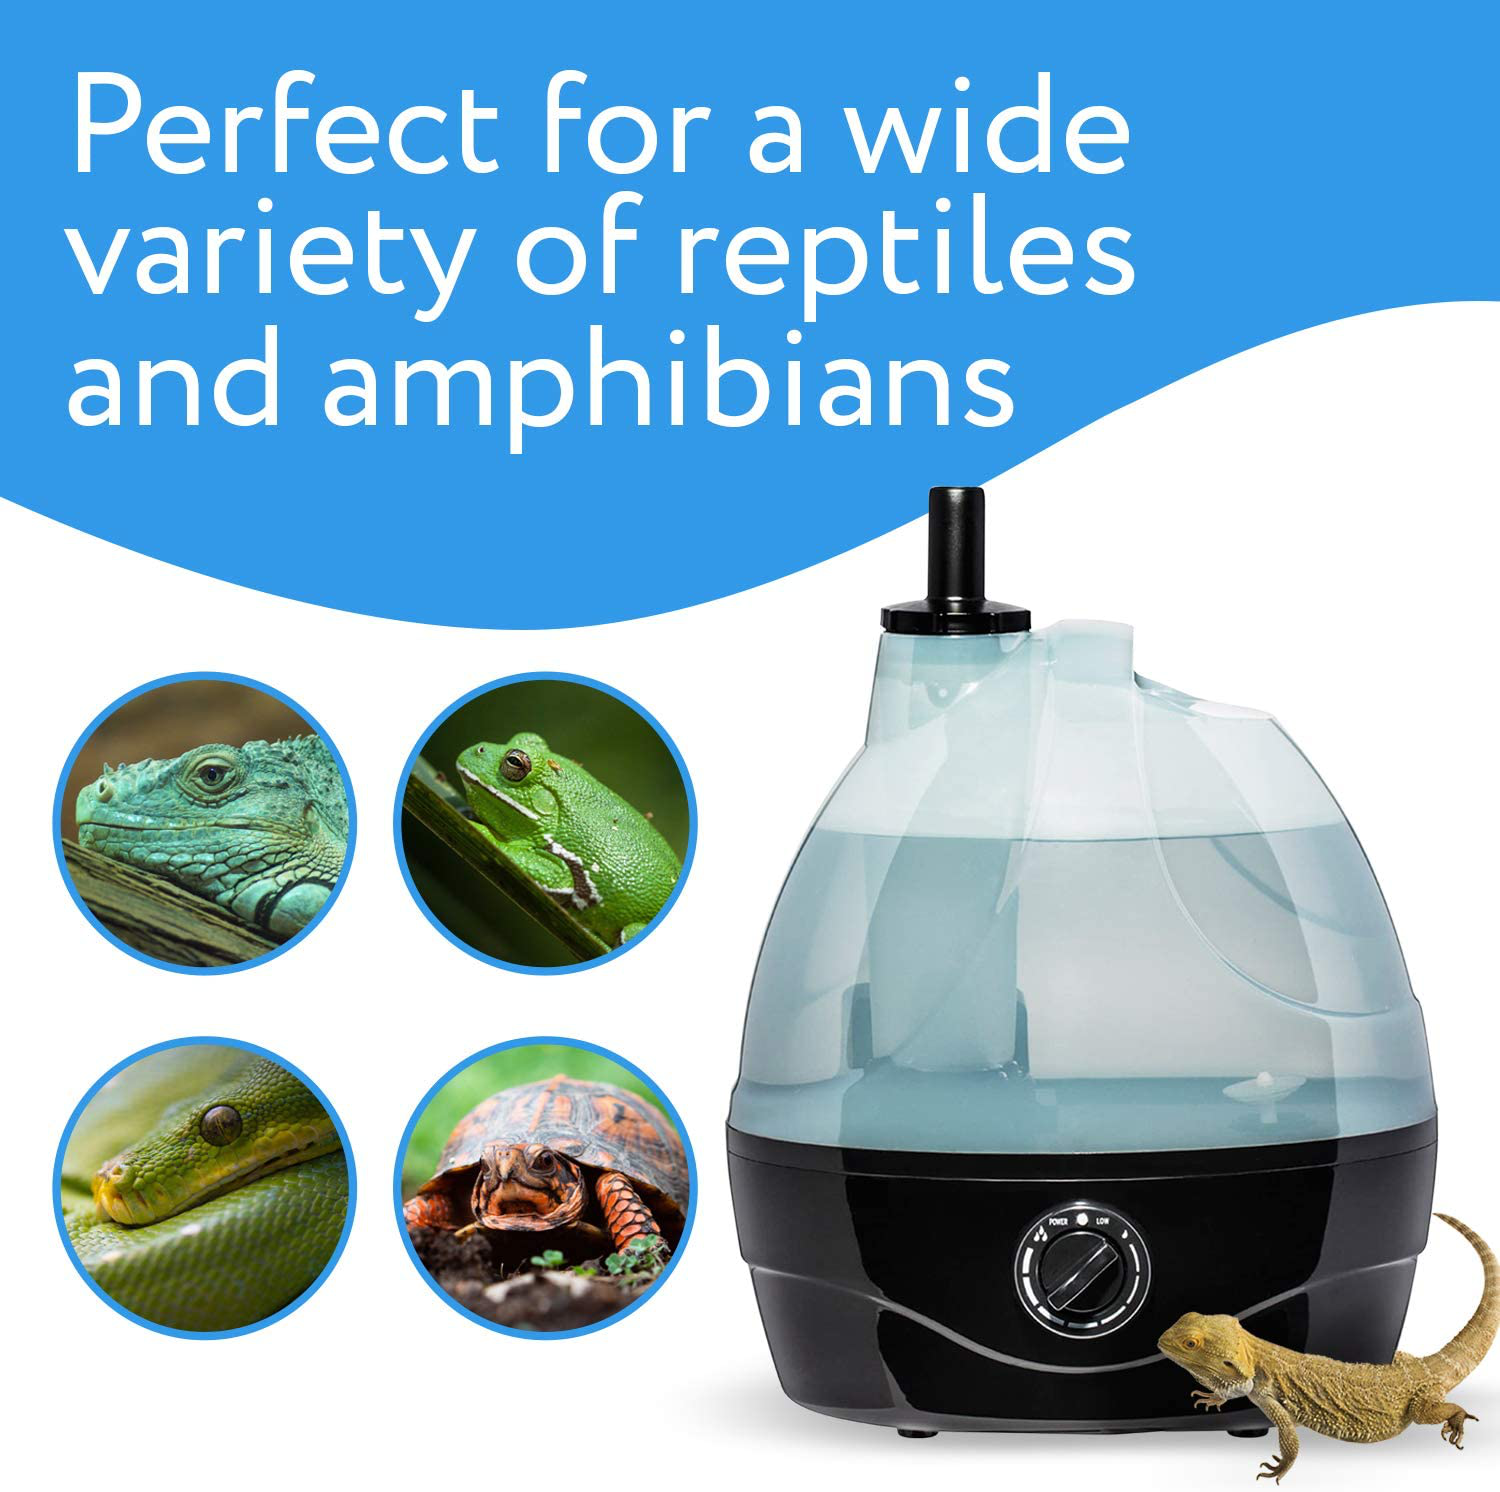 Humidificateur/brumisateur pour reptiles – Grand réservoir – Idéal